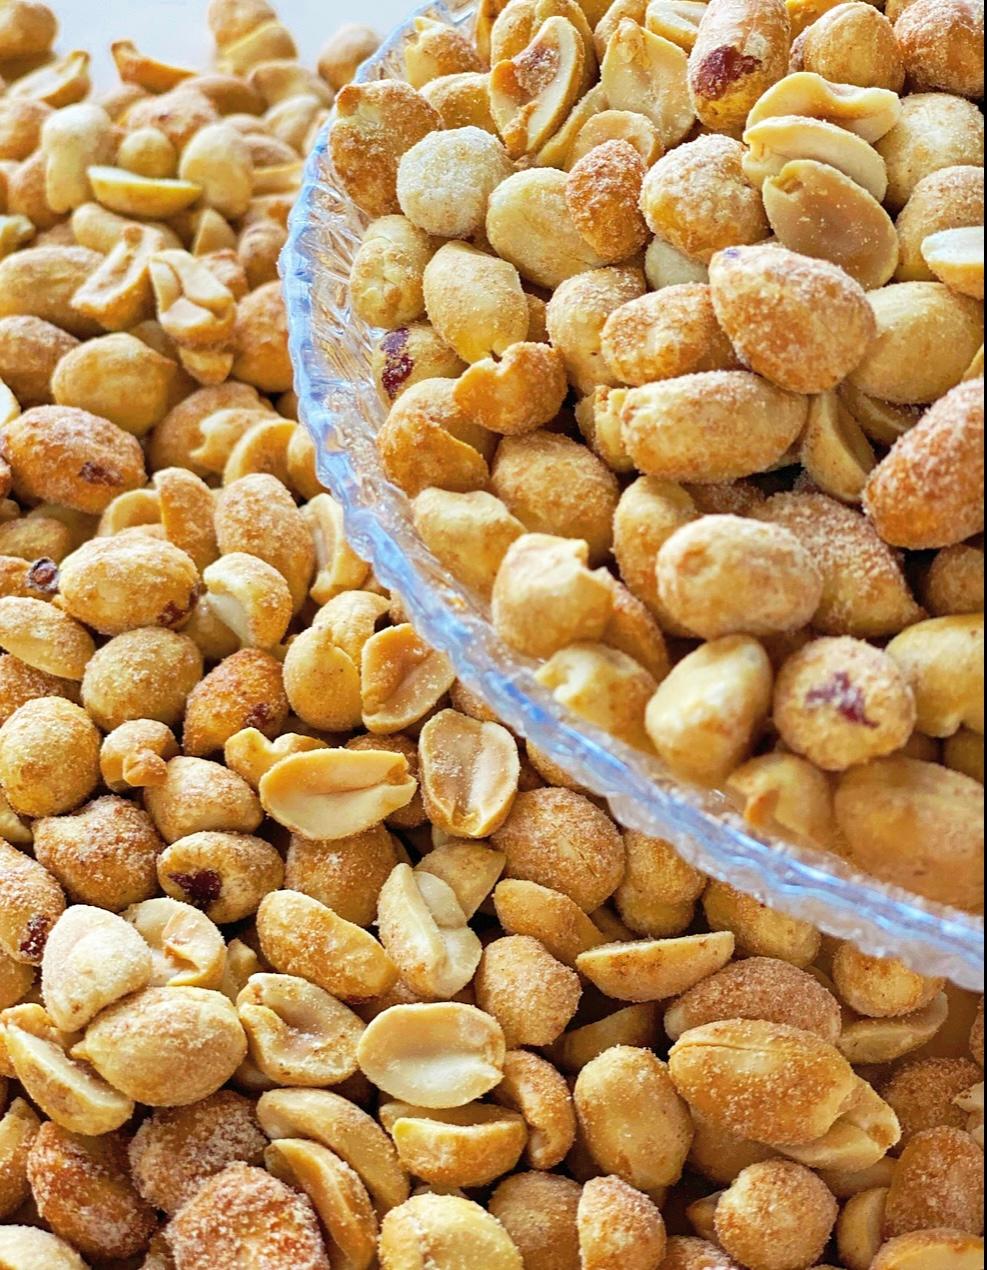 Peanuts Honey Roasted